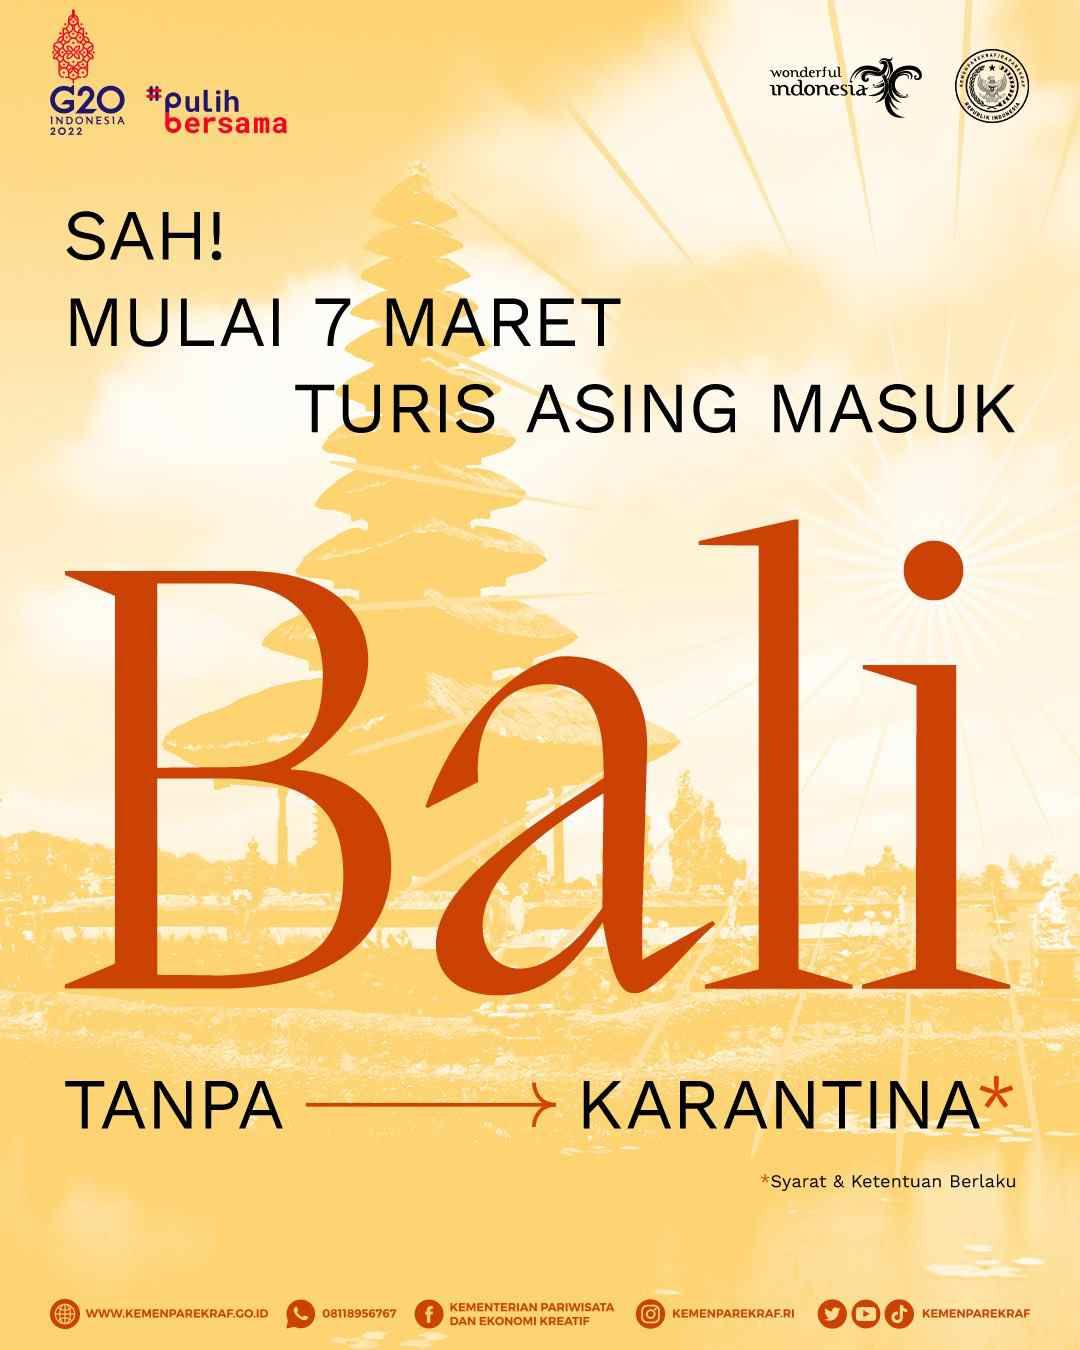 Mulai 7 Maret Bali bebas untuk kunjungan turis asing.